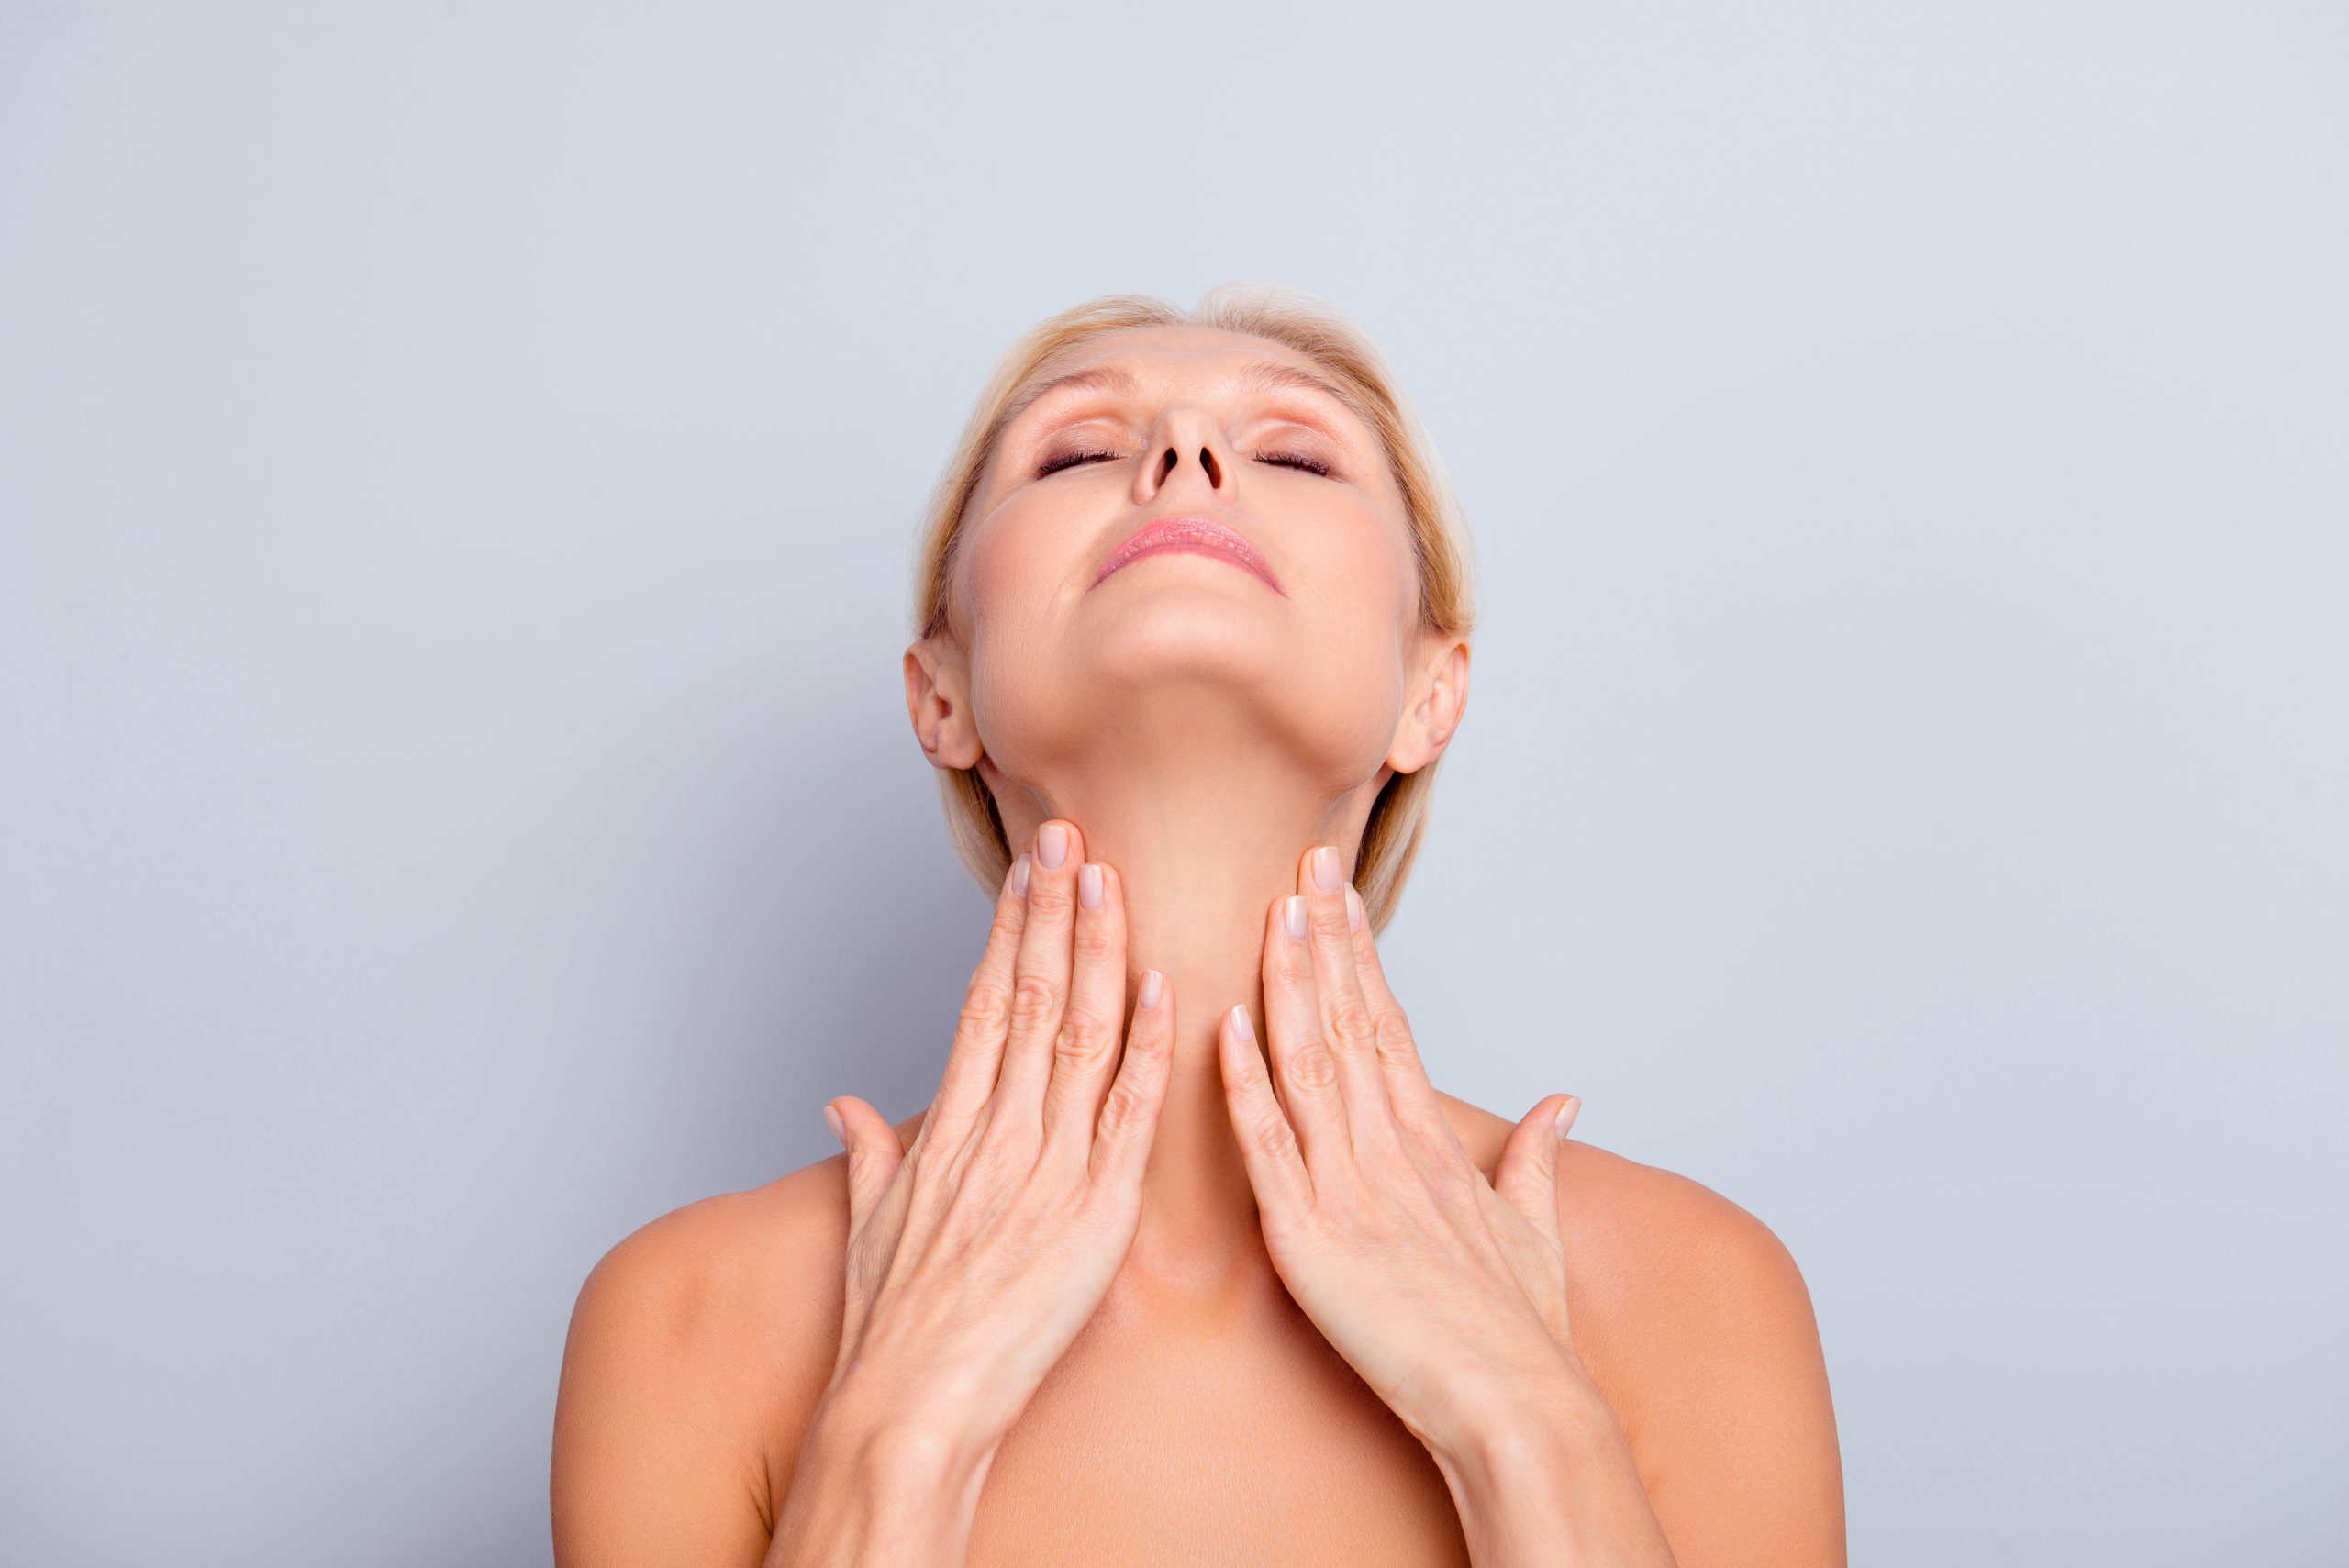 Nek retargeting huidverjonging door middel van laserbehandeling bij de huidtherapeut. Dit is een speciale behandeling voor fijne lijntjes, rimpels en onregelmatige structuur in de hals en nek.